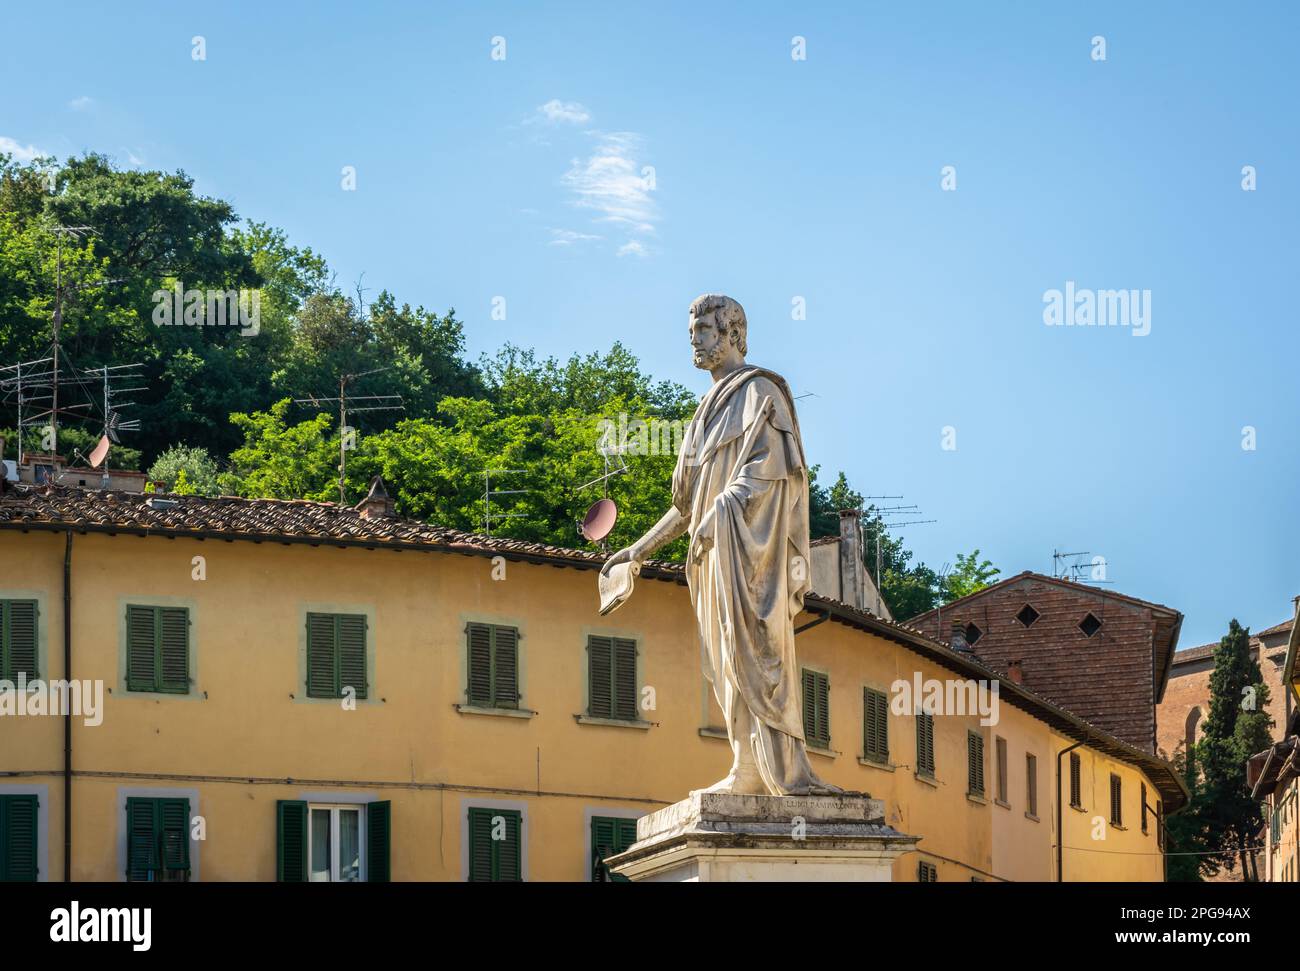 Statua in marmo su un piedistallo a Leopoldo II nel centro storico di San Miniato, provincia di Pisa, Toscana, Italia - Europa Foto Stock